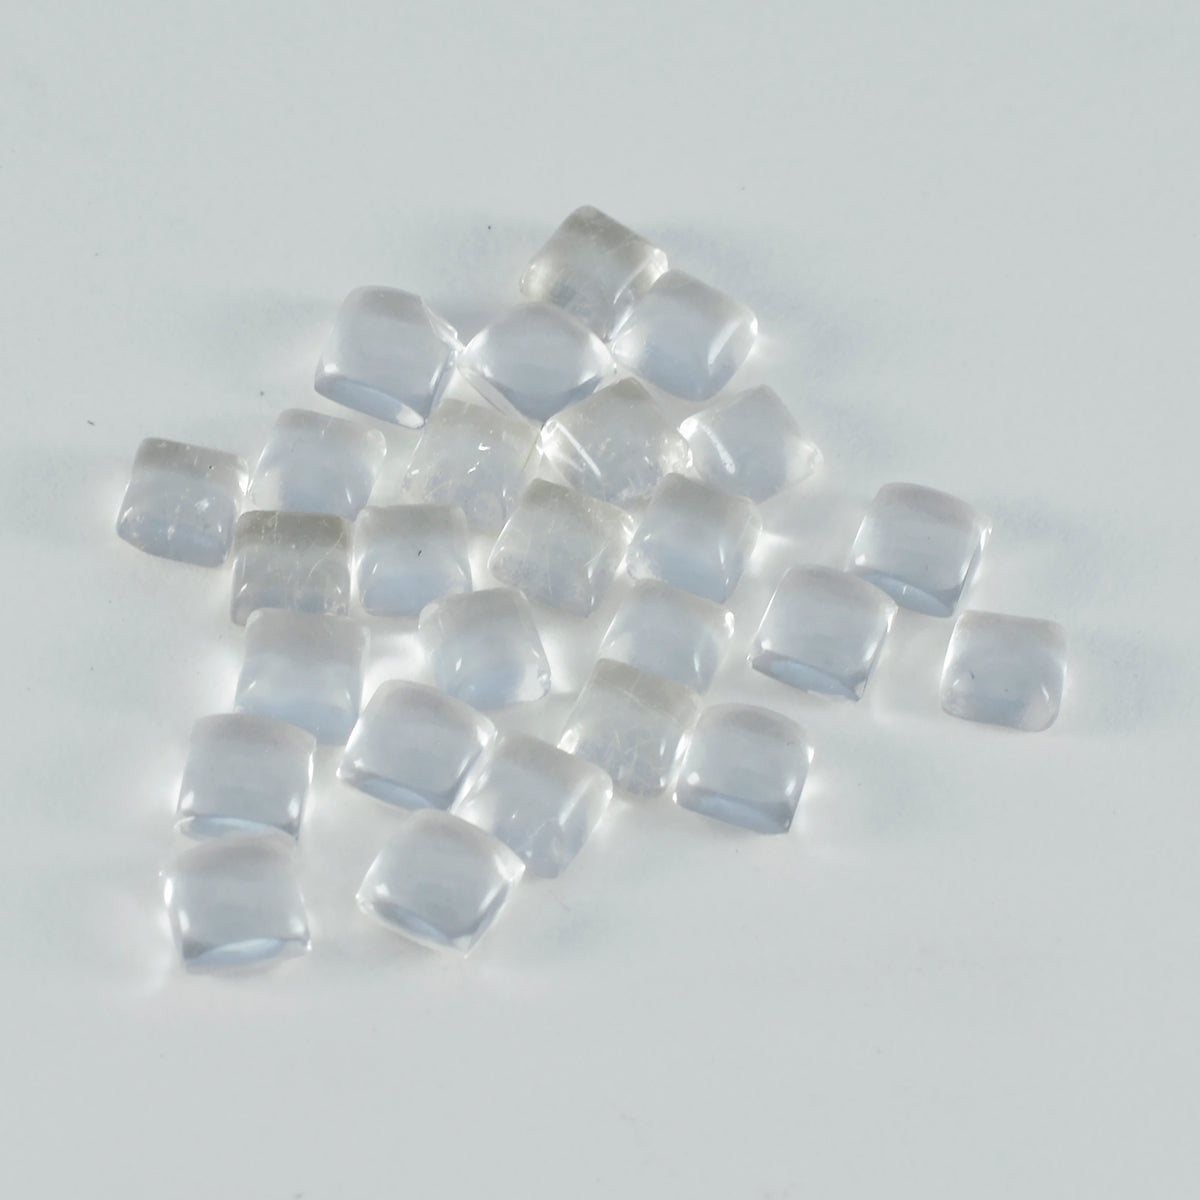 Riyogems 1pc cabochon de quartz en cristal blanc 5x5mm forme carrée belles pierres précieuses de qualité